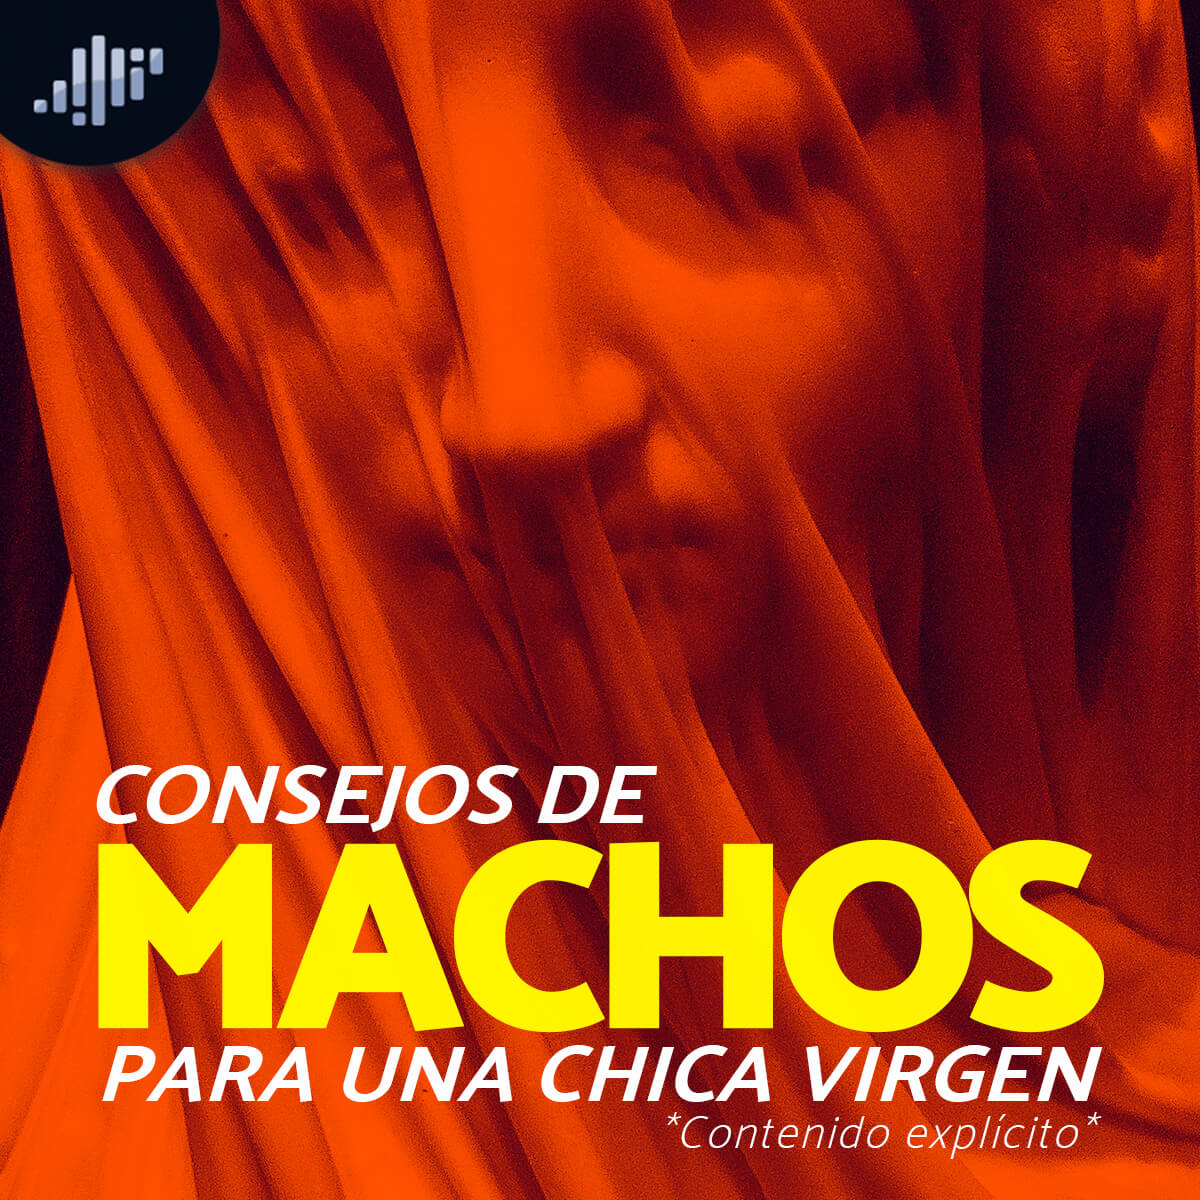 Consejos para una chica "Virgen" | Confesiones de Machos